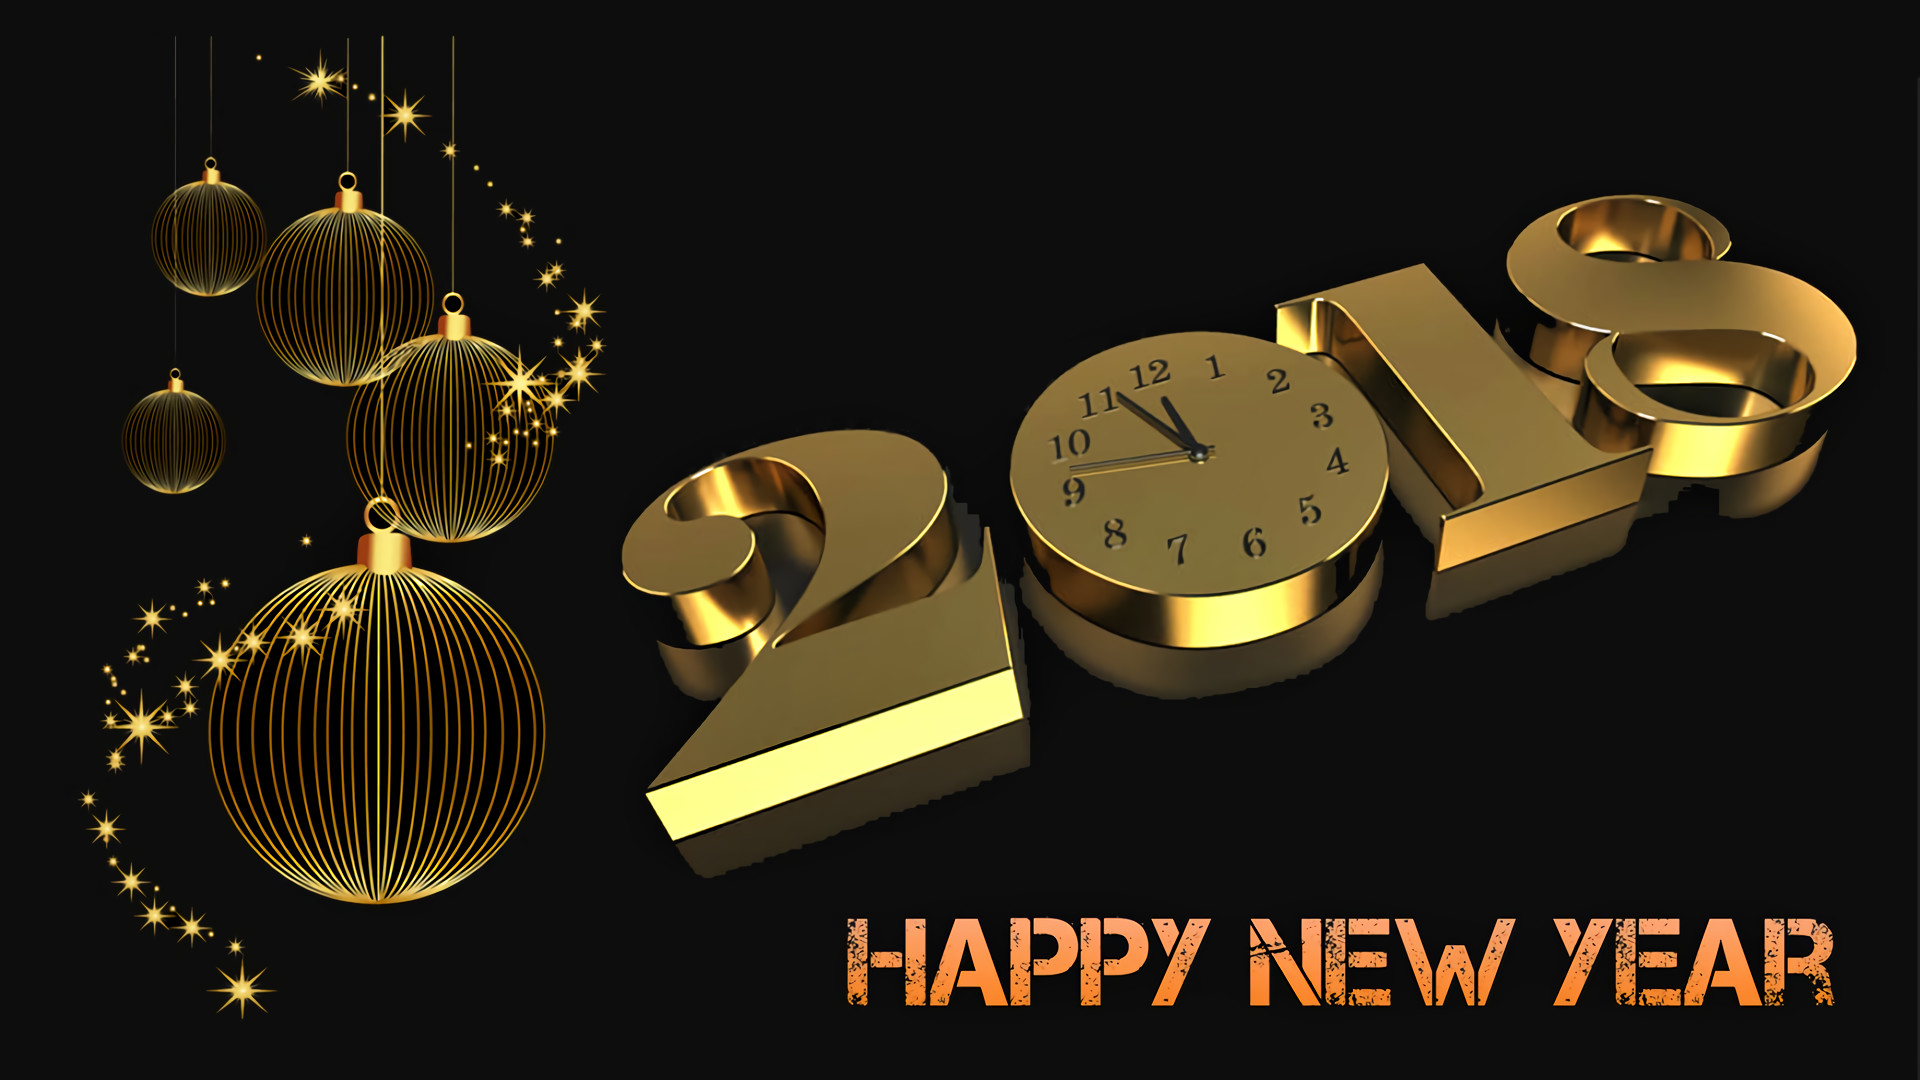 1920x1080 Feiertage - New Year 2018 Feiertage Neujahr Happy New Year Wallpaper